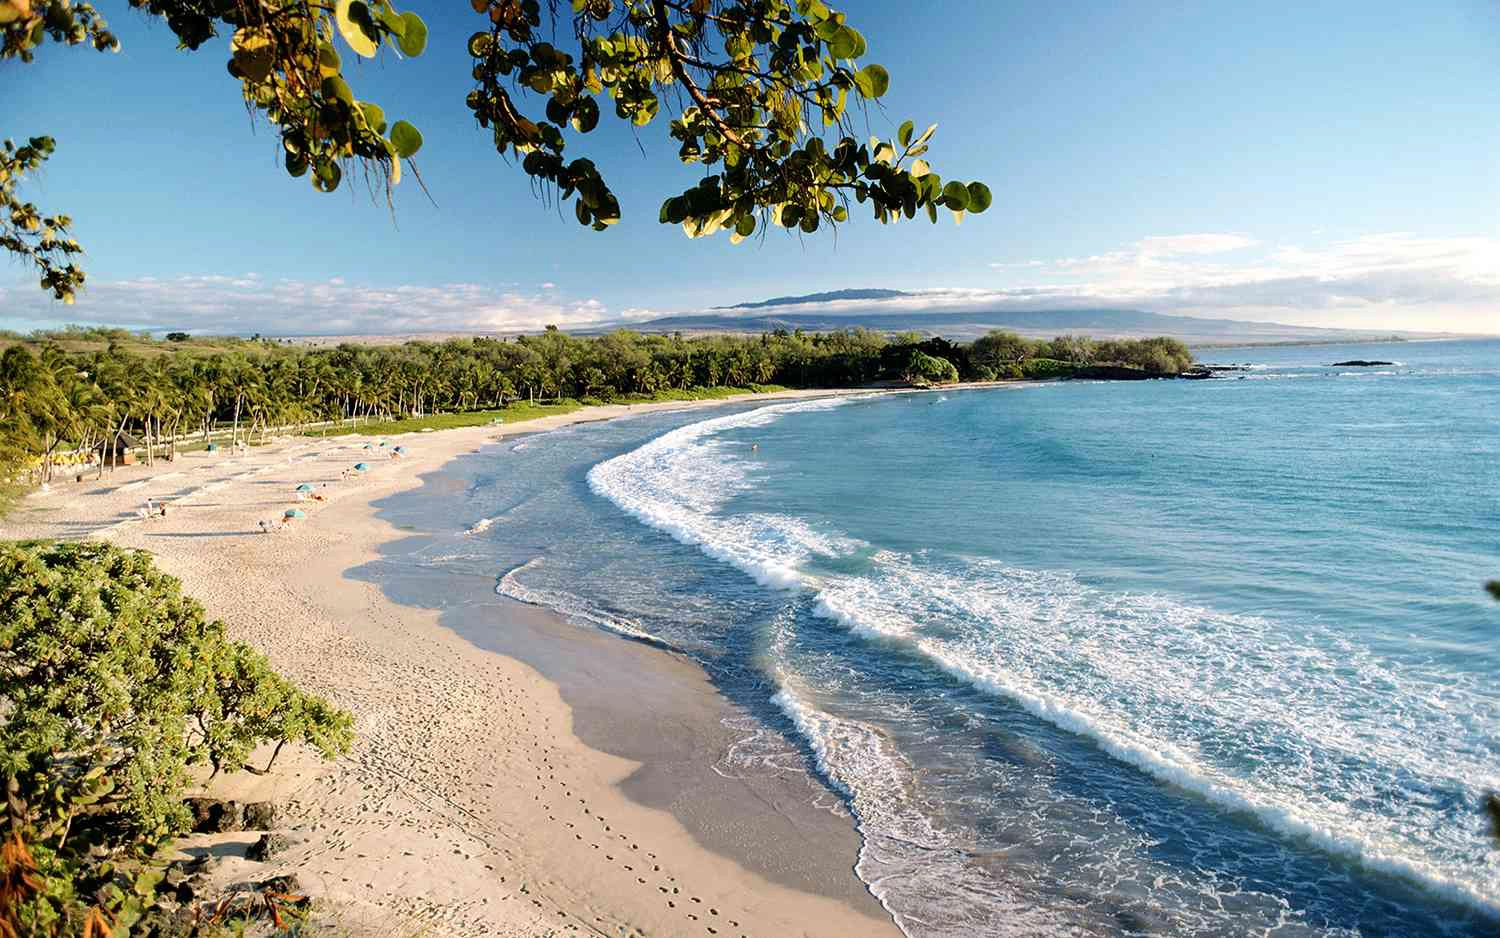  Hawaii  strand - Croatia